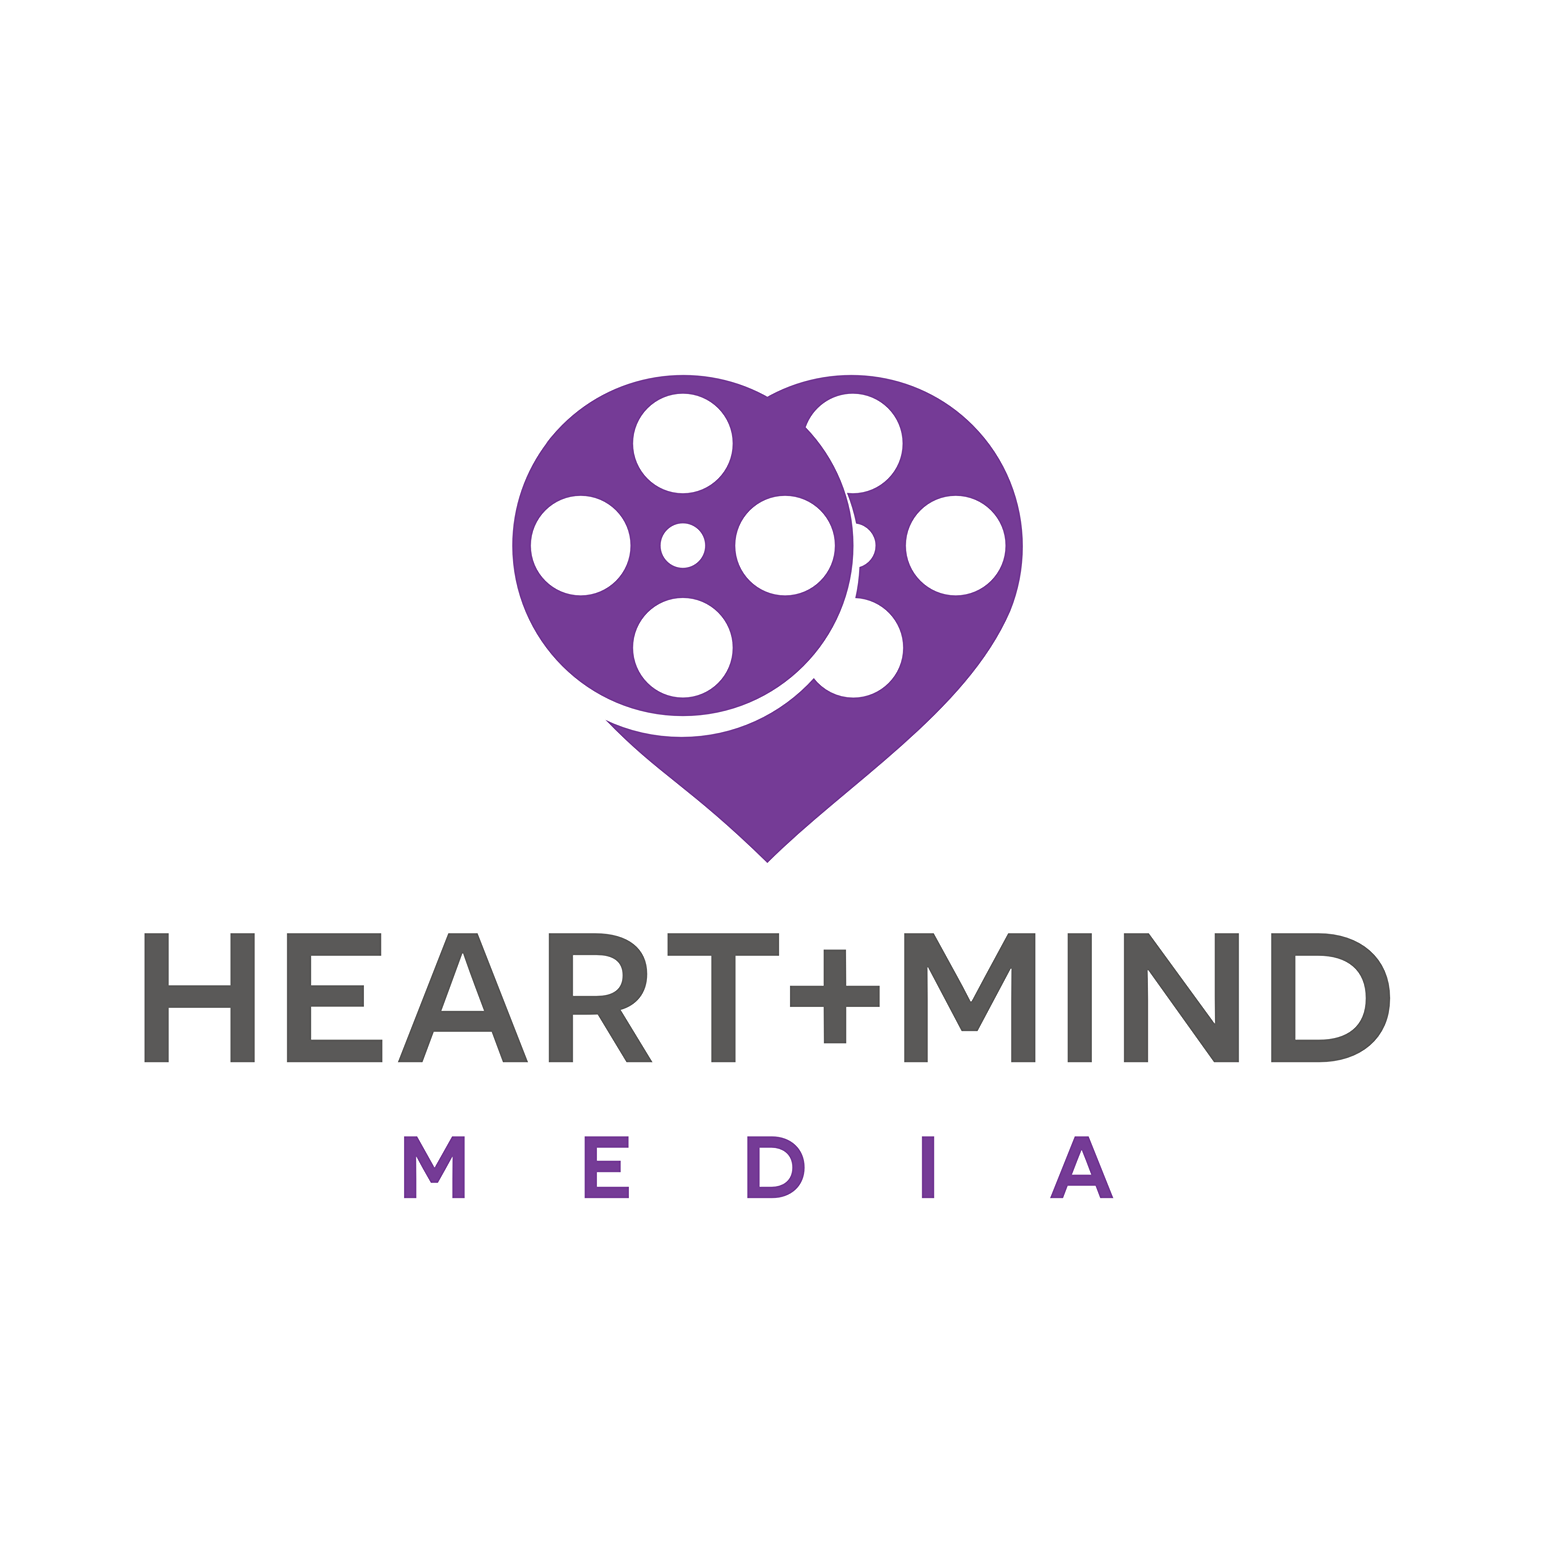 Heart + Mind Media logo.png